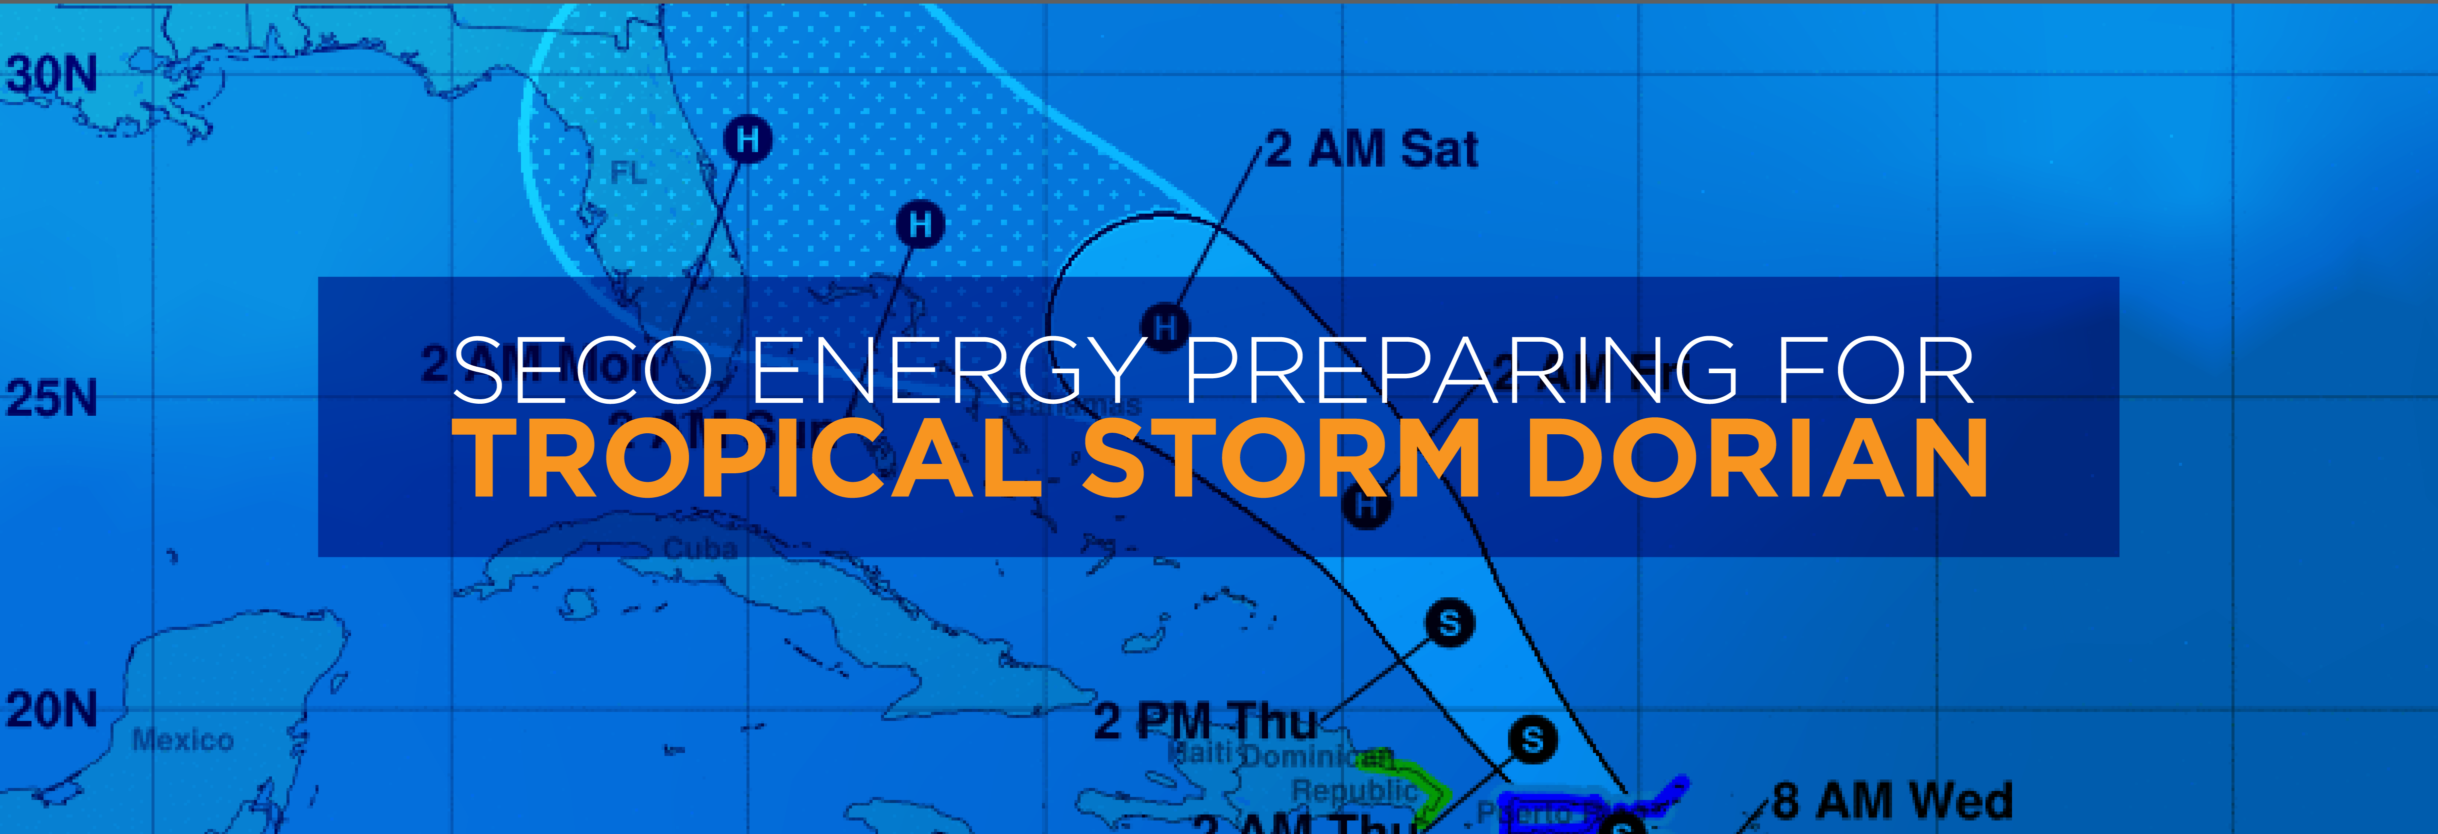 SECO Energy Preparing for Tropical Storm Dorian